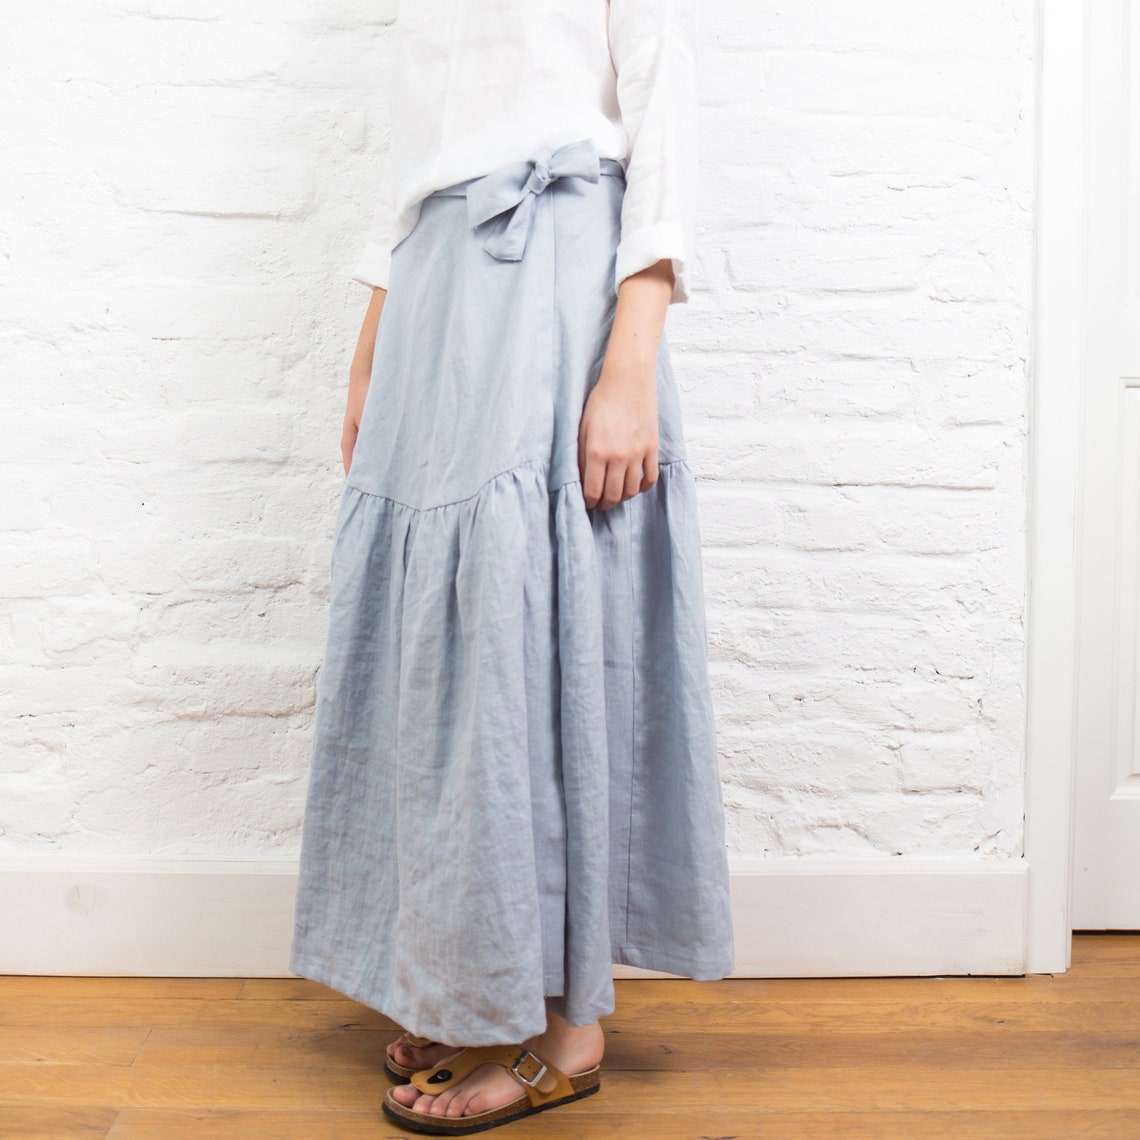 Linen wrap skirt MELODY long linen skirt ruffled skirt long | Etsy